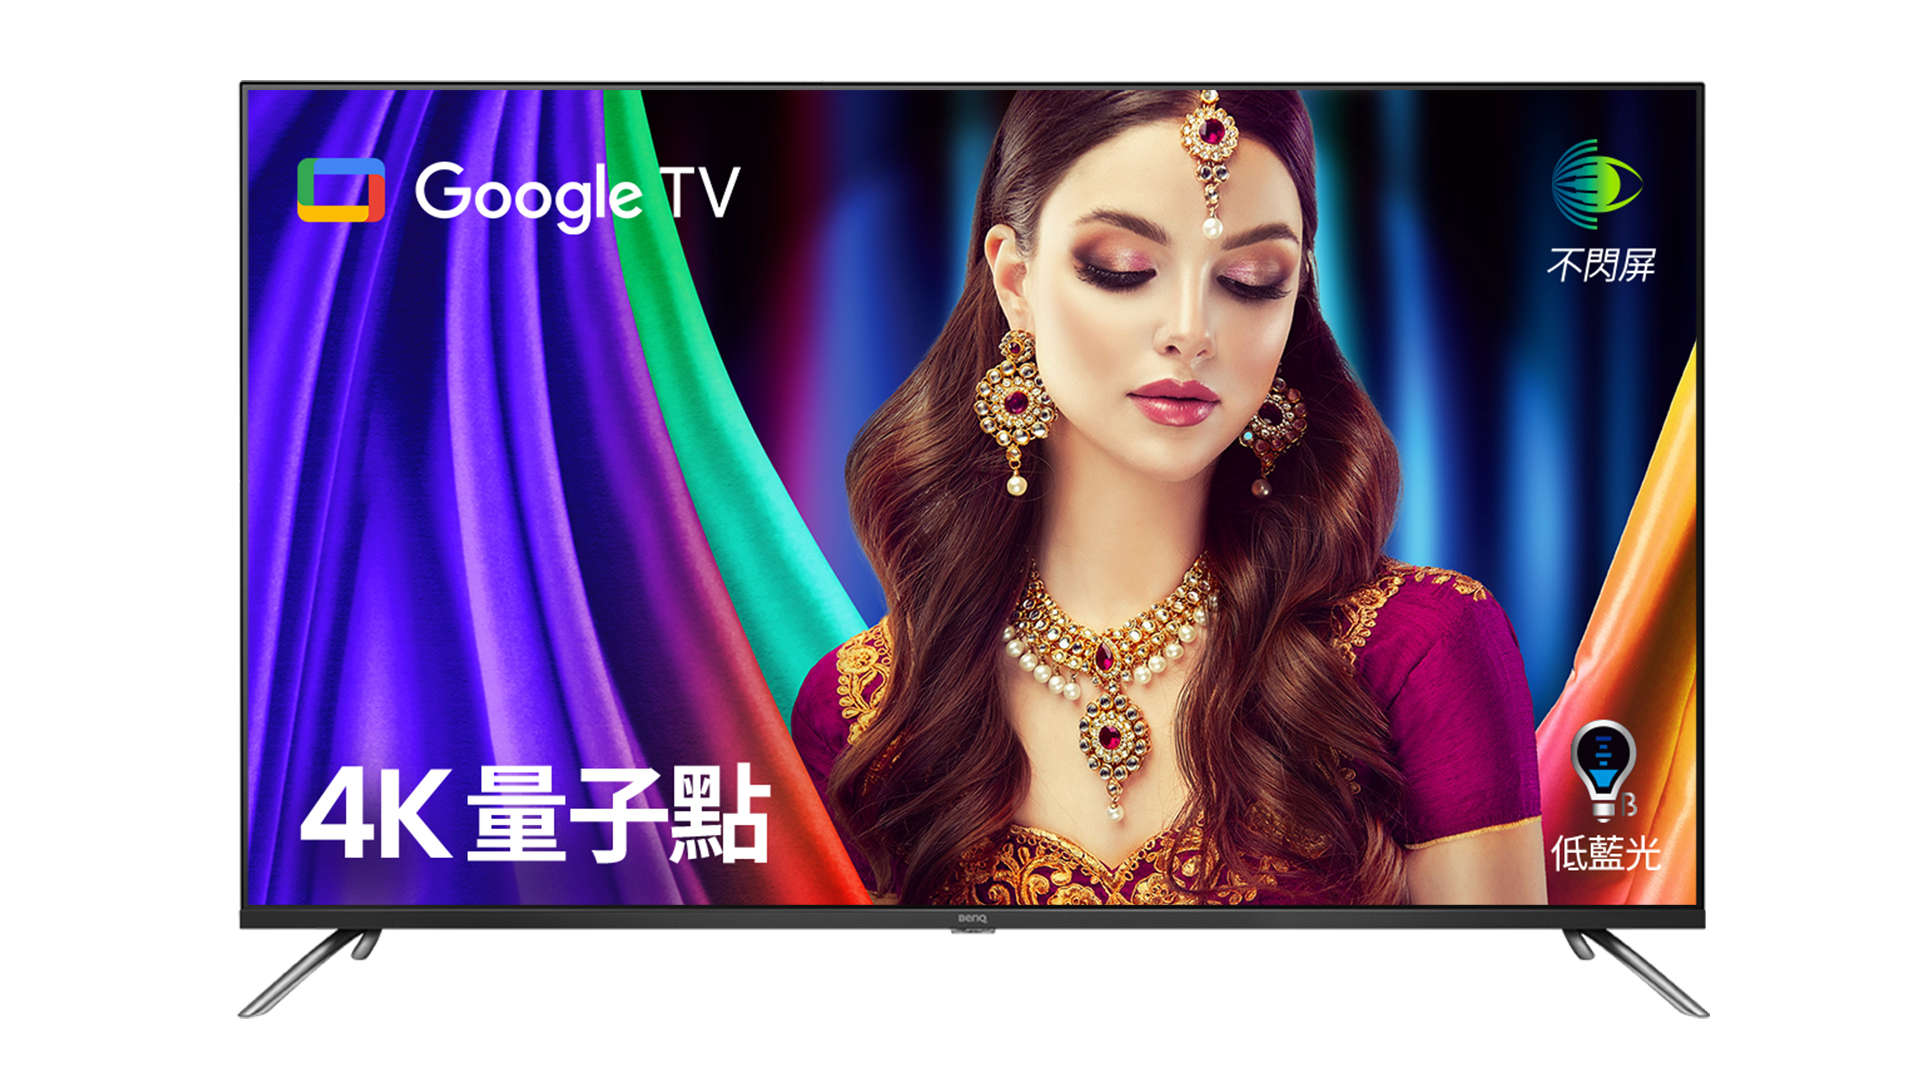 65吋 4K 量子點護眼 Google TV 